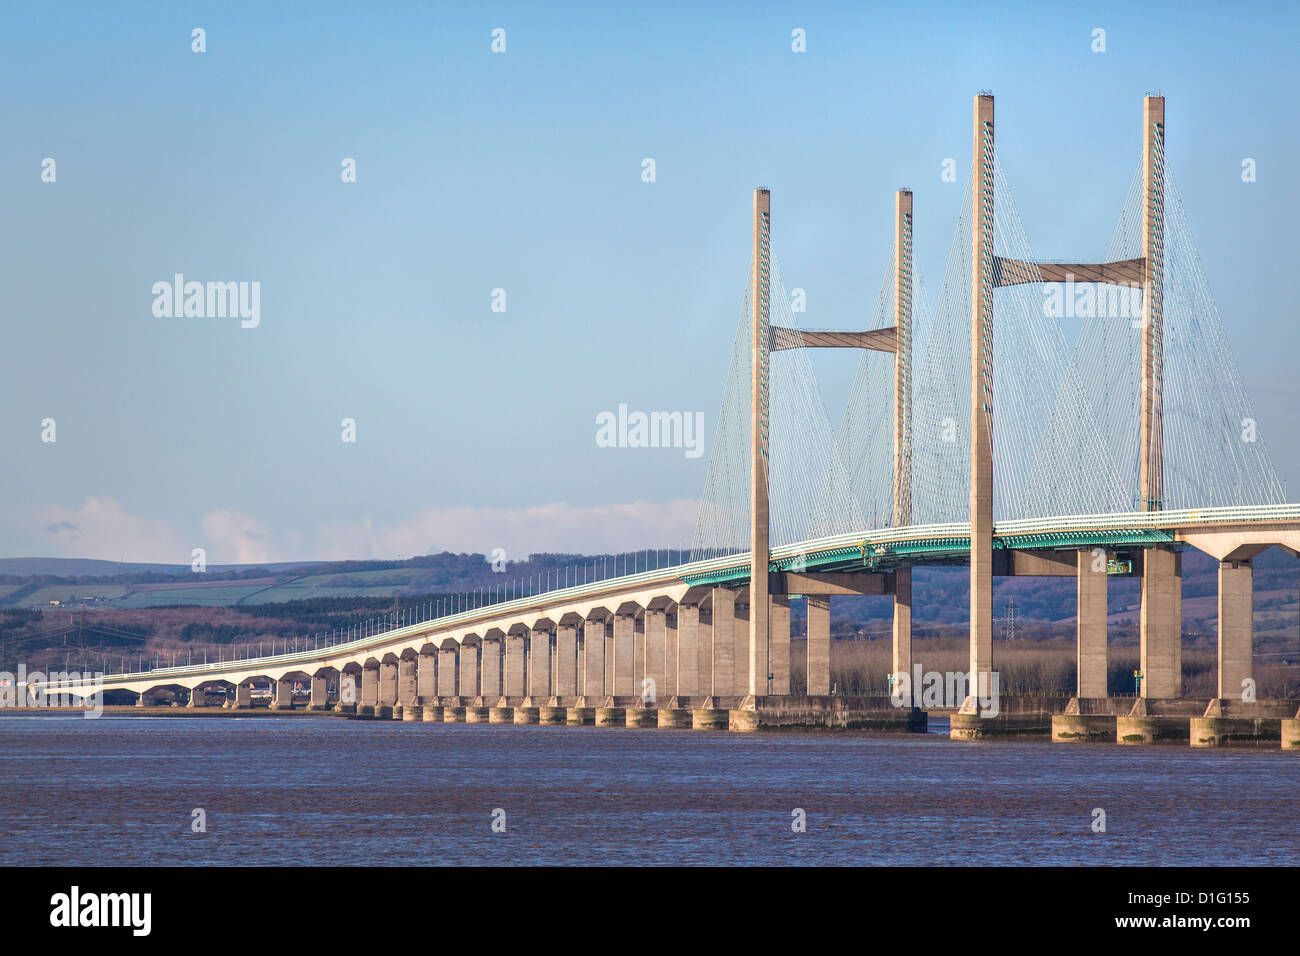 Le pont Prince of Wales ou second Severn Crossing transporte le trafic routier sur l'autoroute M4 entre le pays de Galles et le pays de l'Ouest près de Bristol au Royaume-Uni Banque D'Images